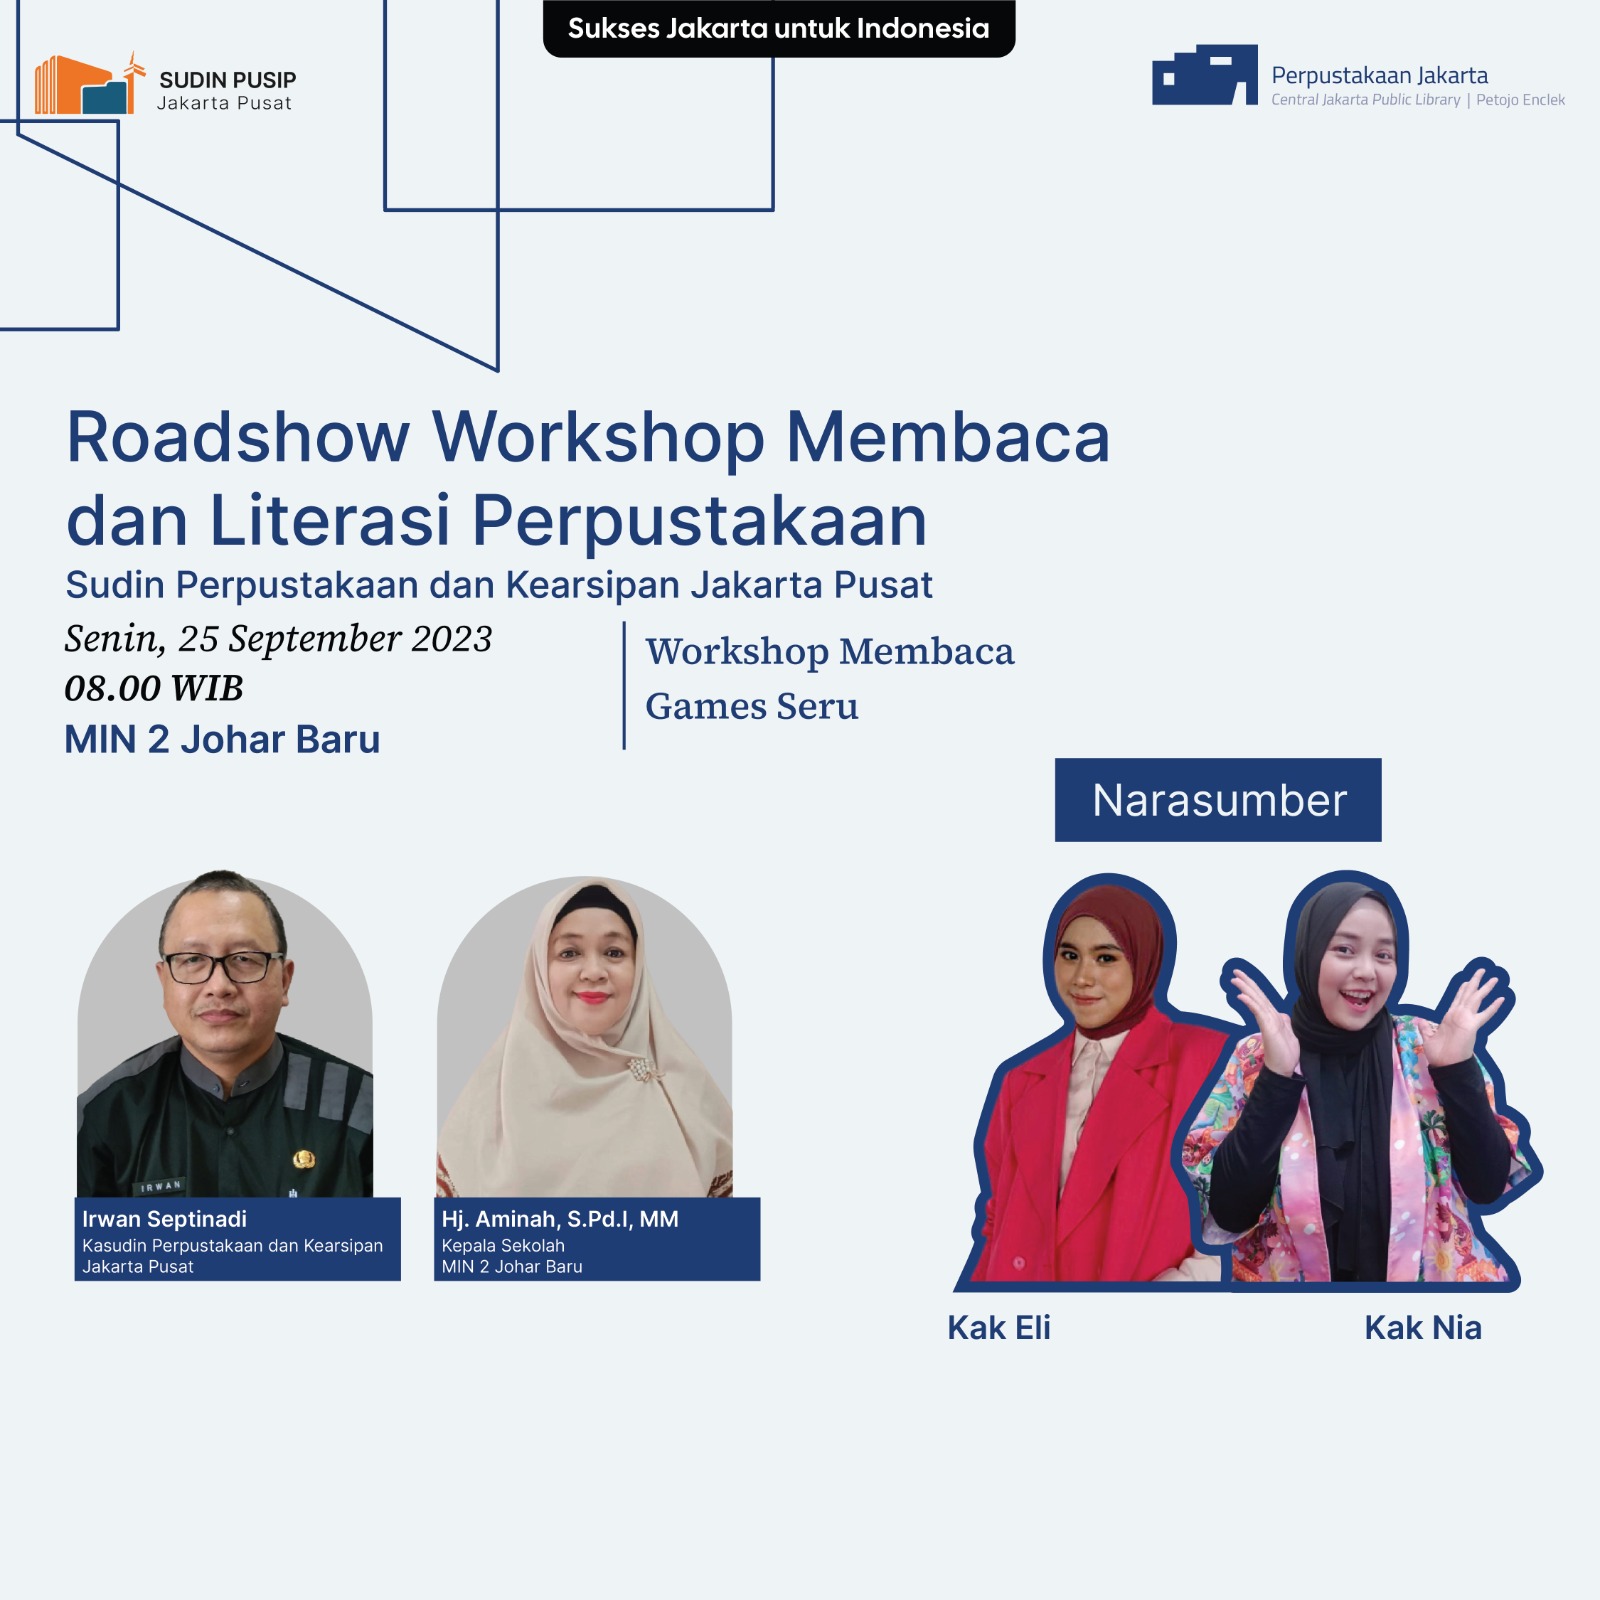 Roadshow Workshop Membaca Dan Literasi Perpustakaan Sudin Pusip Jakarta Pusat Di MIN 2 Johar Baru